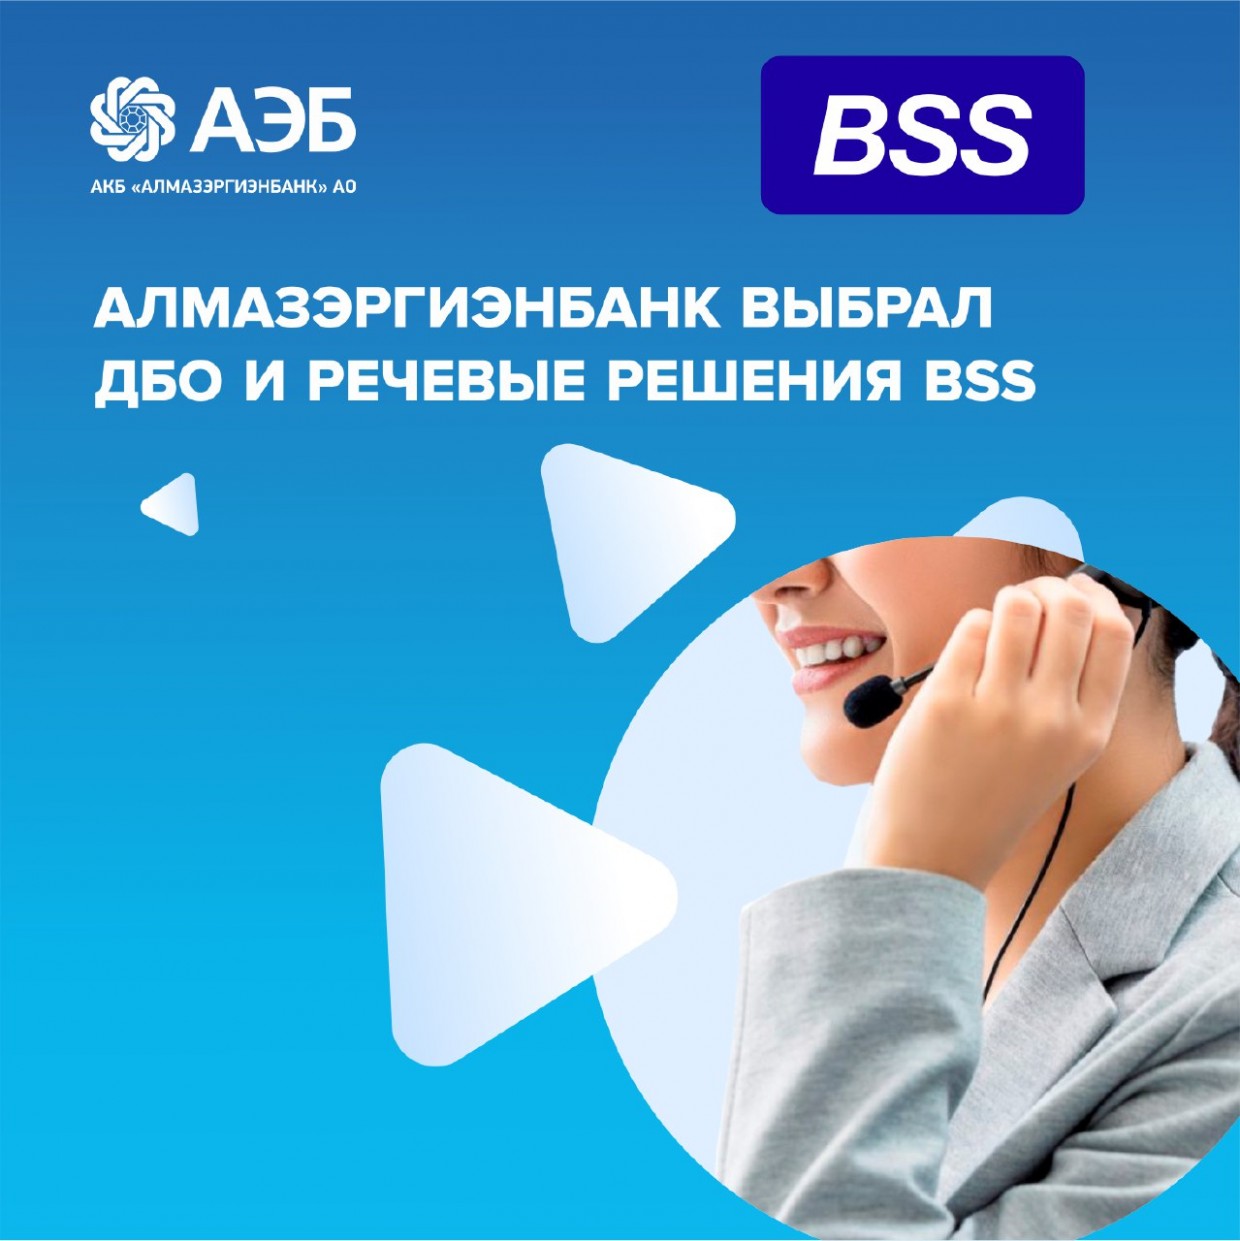 Алмазэргиэнбанк выбрал ДБО и речевые решения BSS